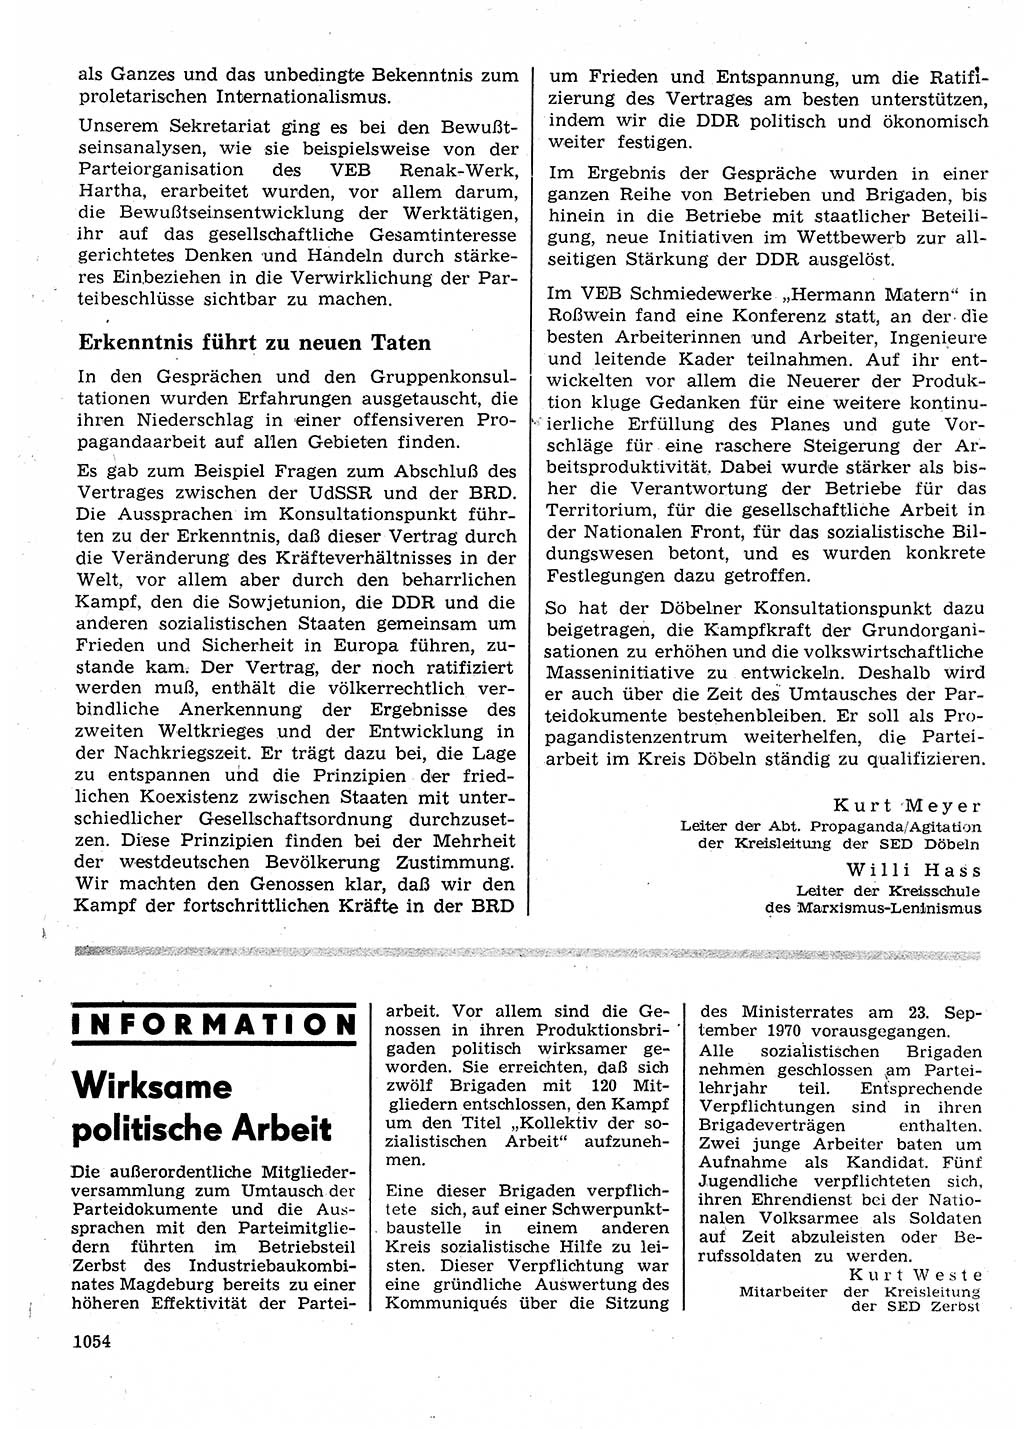 Neuer Weg (NW), Organ des Zentralkomitees (ZK) der SED (Sozialistische Einheitspartei Deutschlands) für Fragen des Parteilebens, 25. Jahrgang [Deutsche Demokratische Republik (DDR)] 1970, Seite 1054 (NW ZK SED DDR 1970, S. 1054)